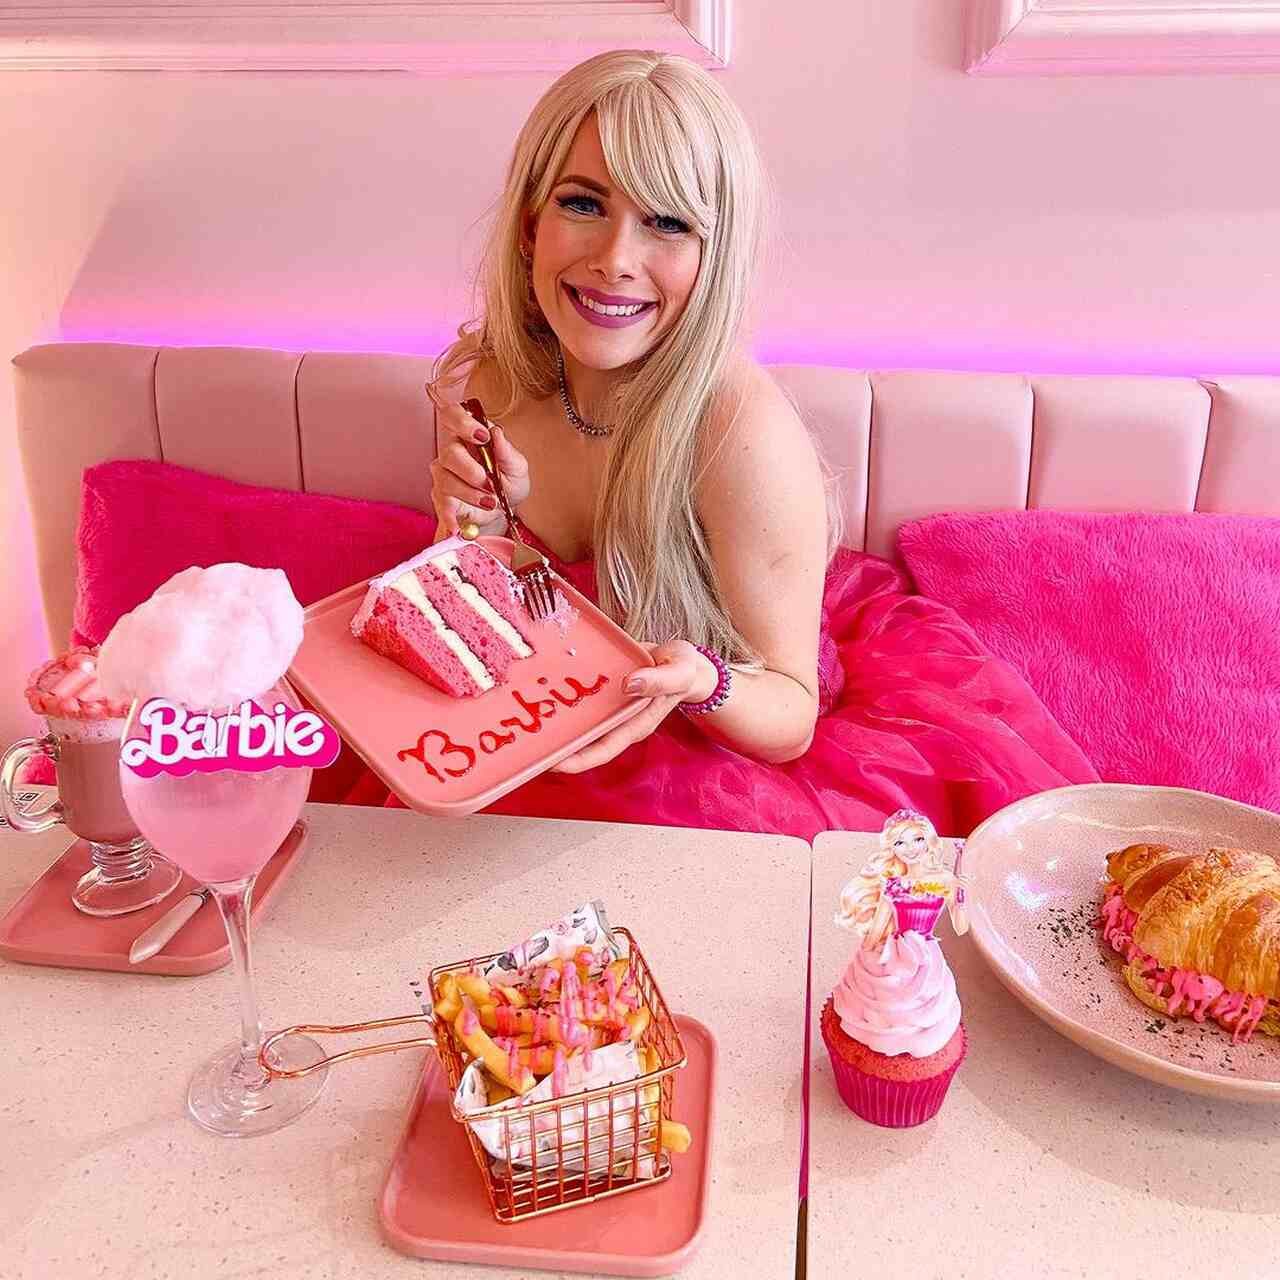 Comerciam? Burger King lança combo temático da Barbie - Notícias